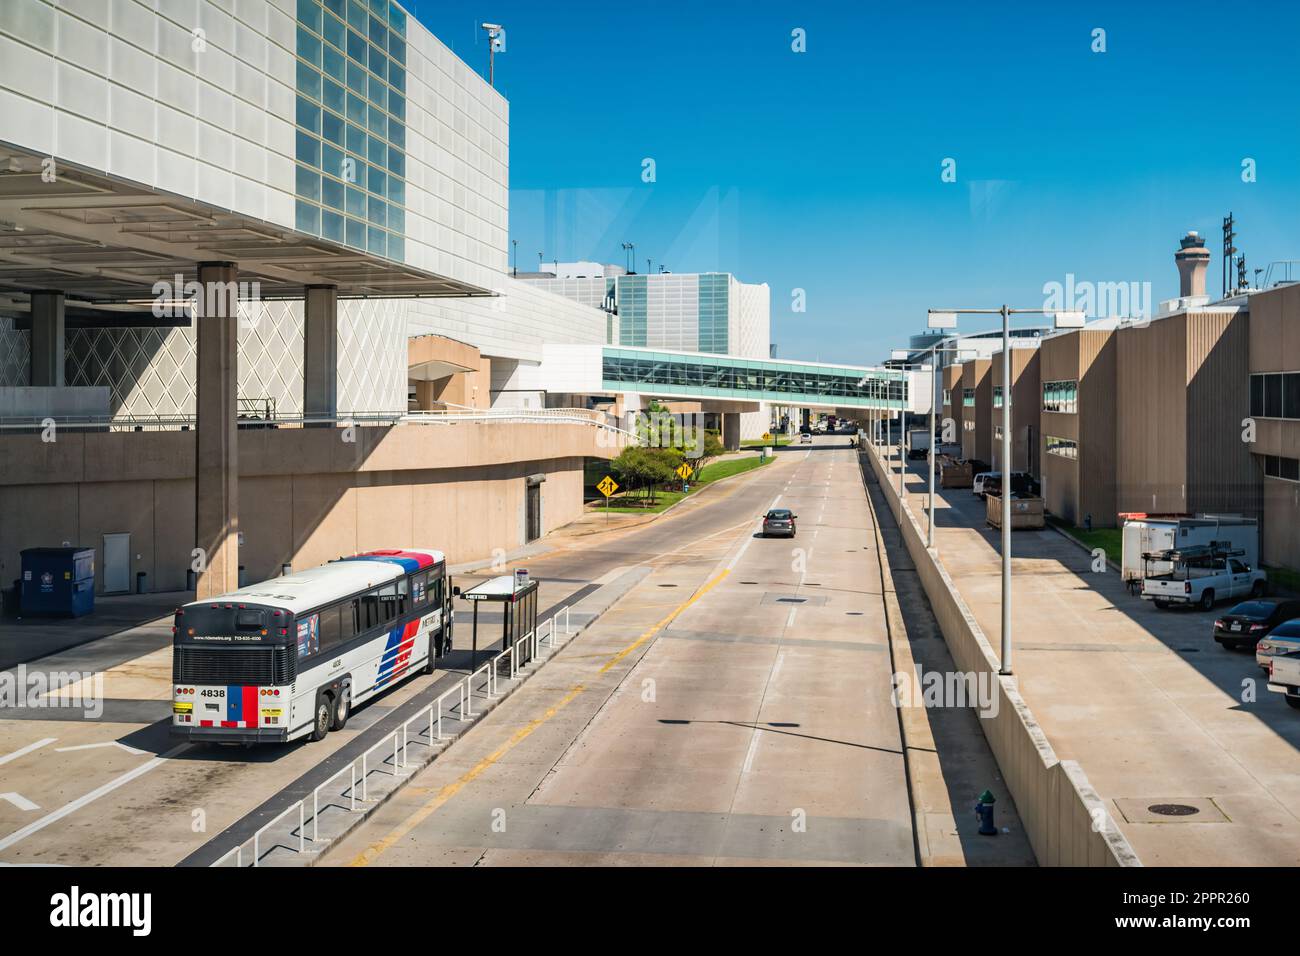 L'arrêt de bus se trouve à l'aéroport intercontinental George Bush de Houston, Texas, États-Unis. Banque D'Images